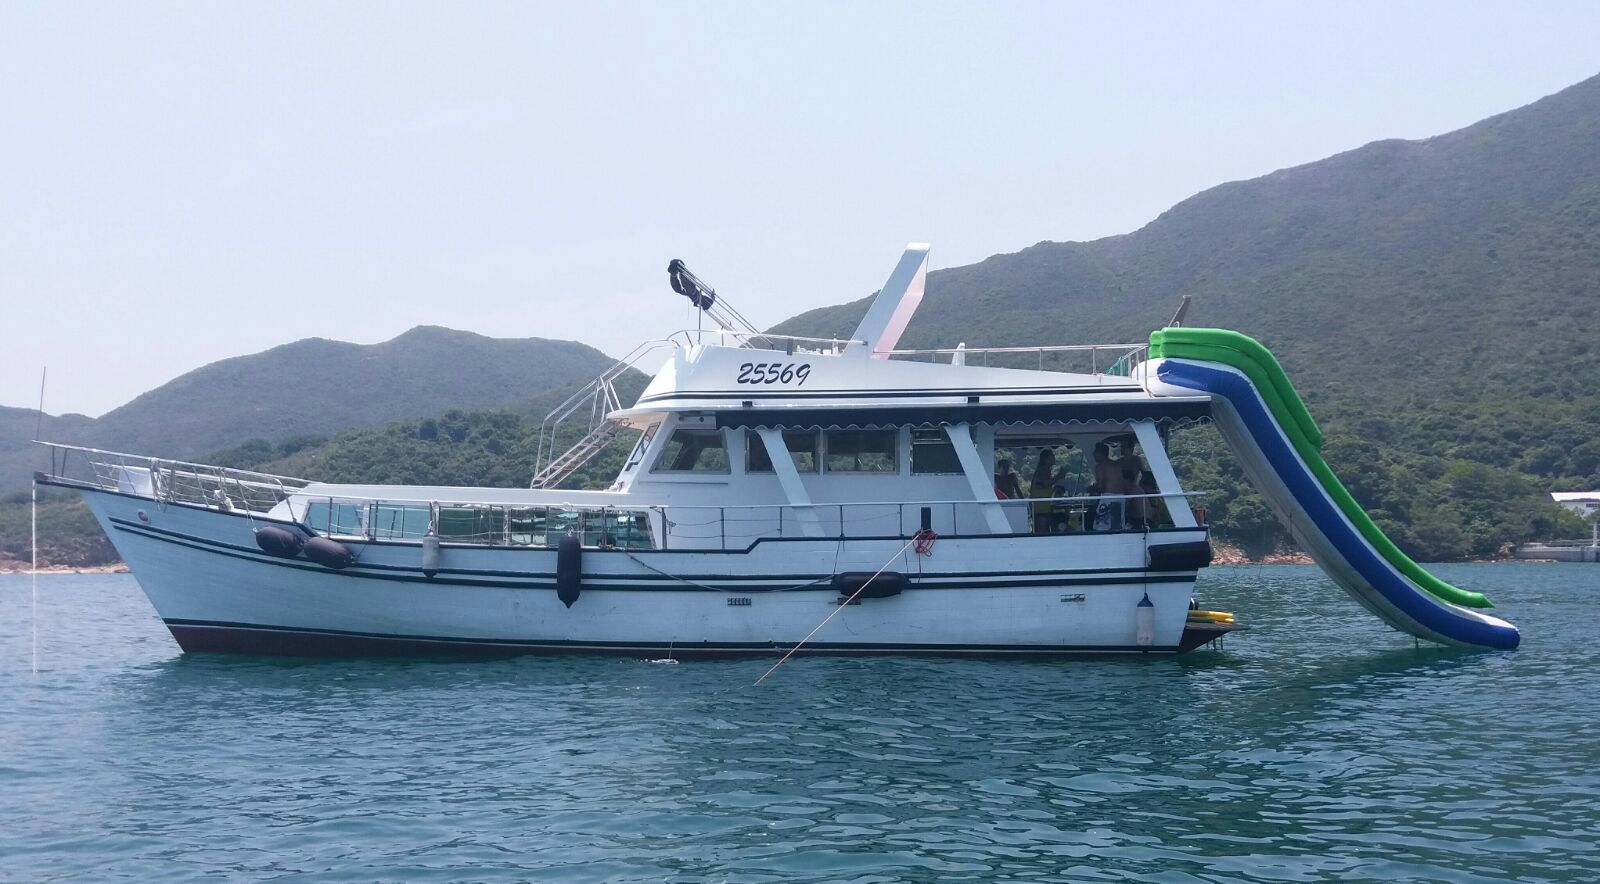 最新遊艇25569 - Hey boat trip @ 香港遊艇網